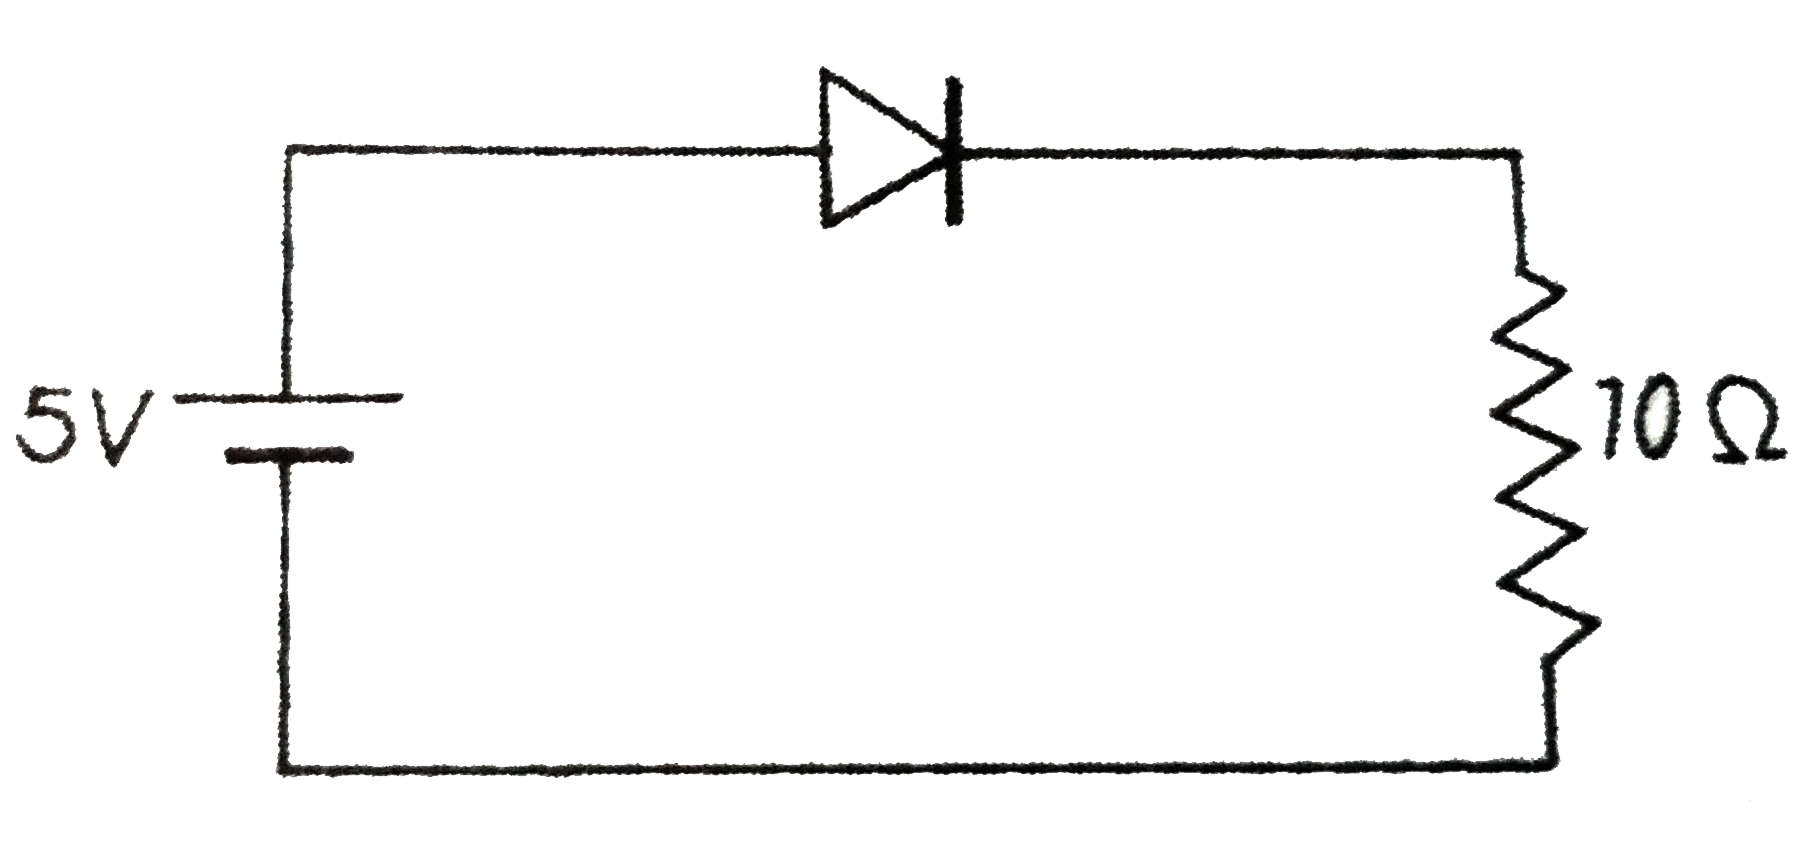 p - n सन्धि डायोड का पश्चदिशिक परिपथ बनाइए।       चित्र में दिखाए गए परिपथ  में प्रतिरोध 10 ओम में होकर बहने वाली धारा का मान ज्ञात कीजिए।       दिया है कि डायोड का प्राचीर विभव 0.7 V वोल्ट है।